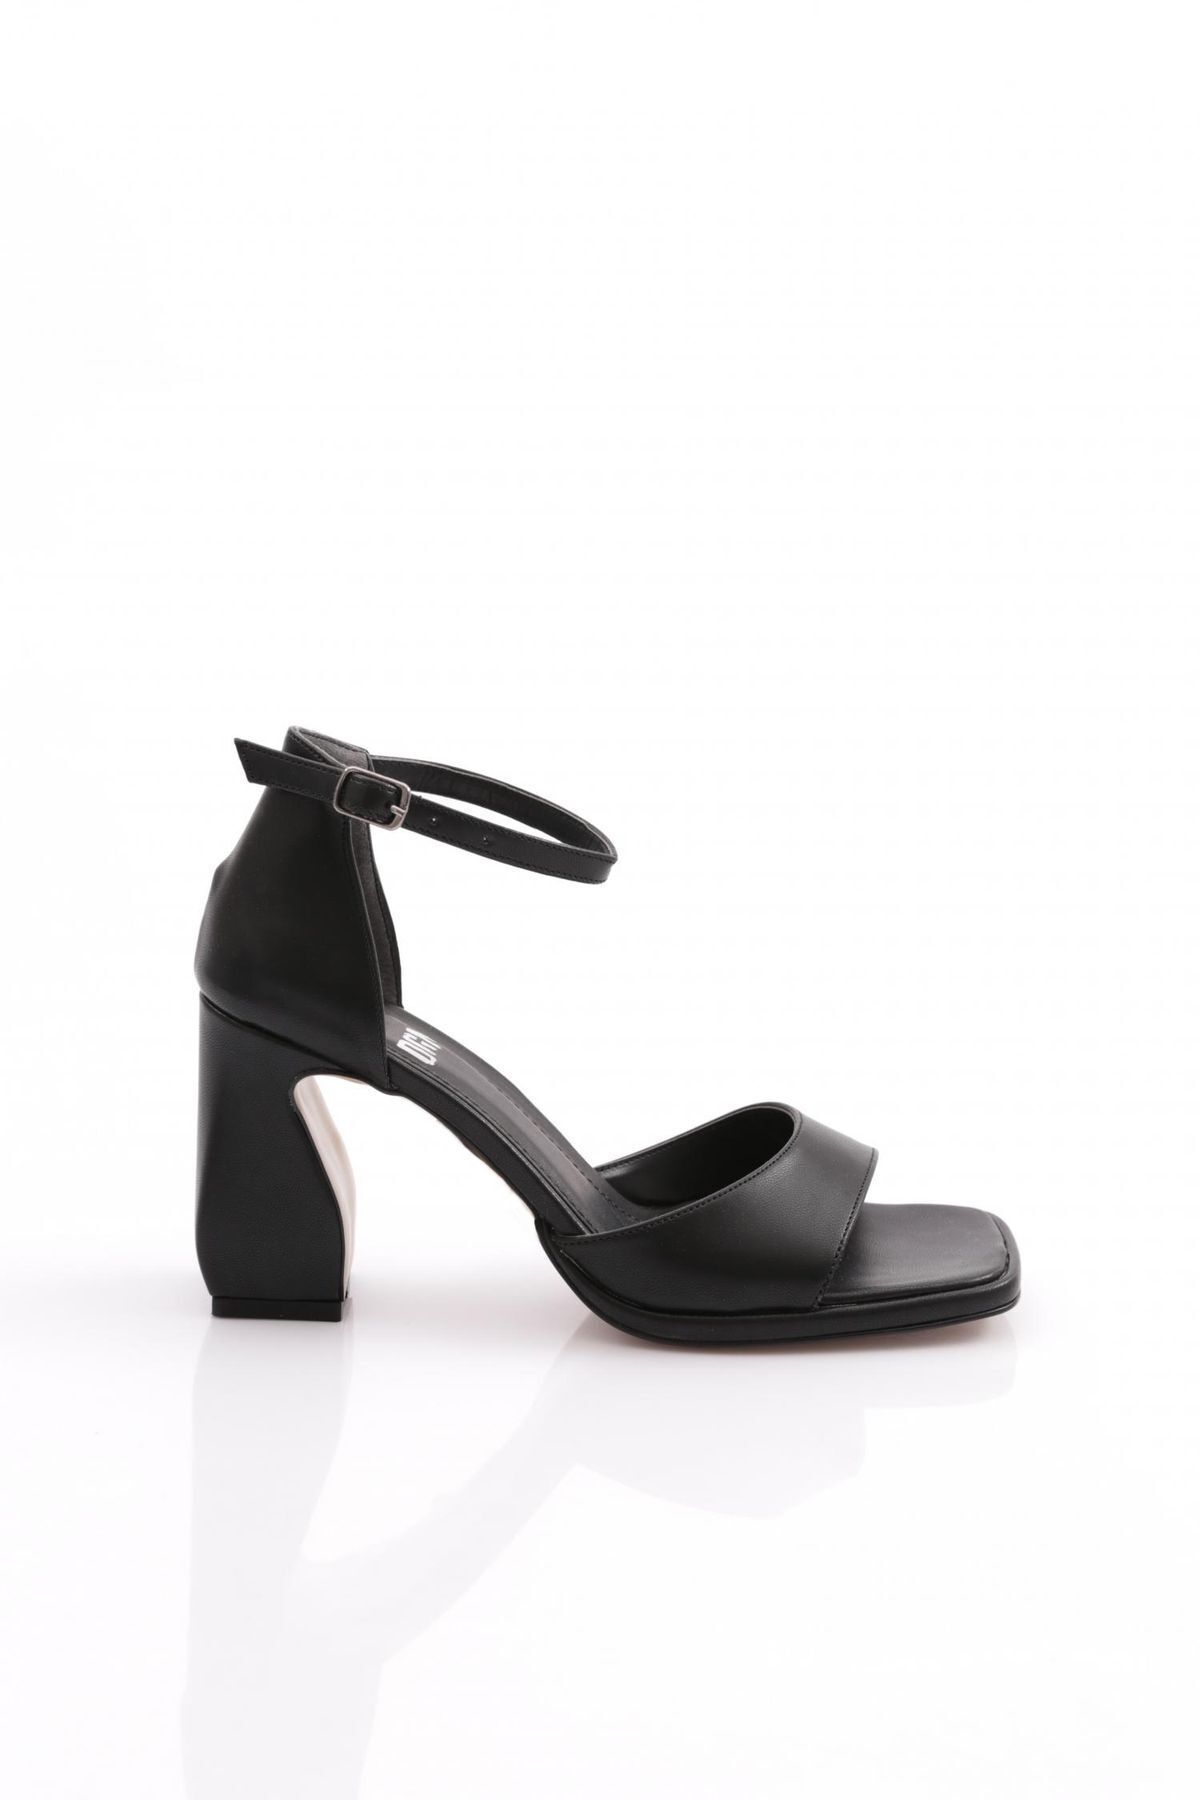 Dgn Pm221-k501 Kadın Tek Şeritli Bilekten Bağlama Topuklu Ayakkabı Siyah Cilt